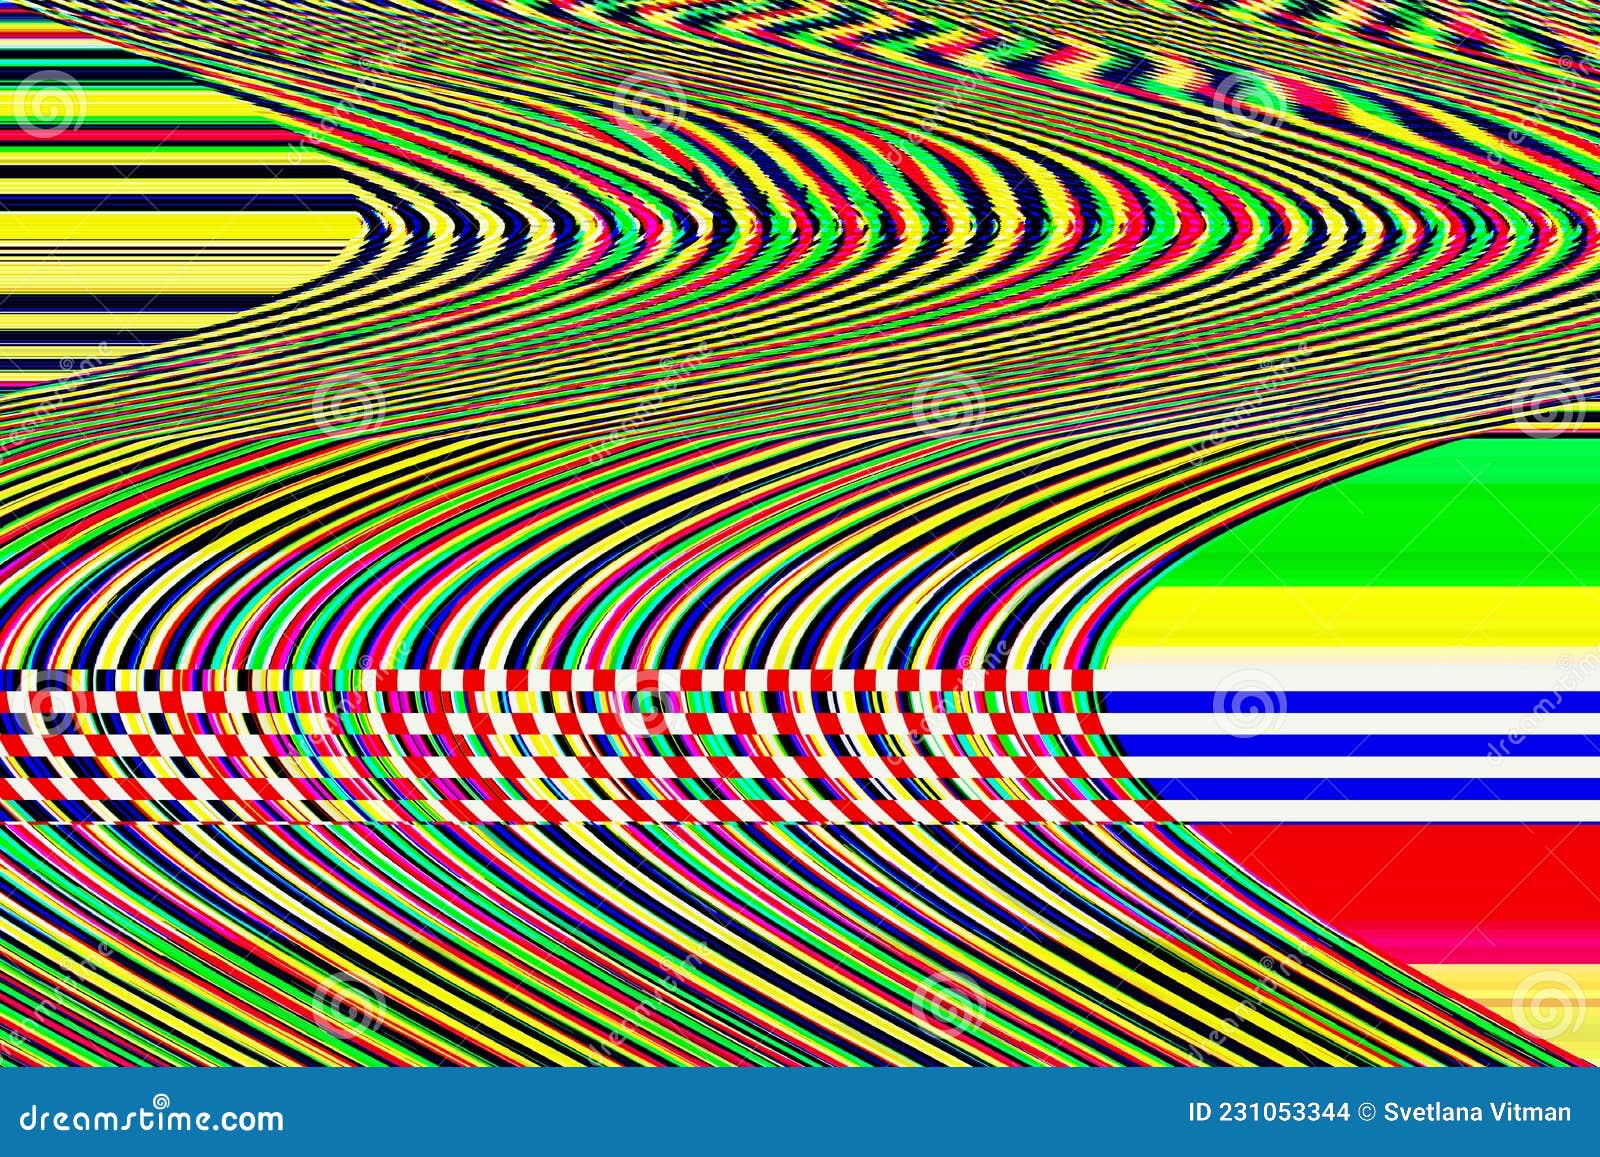 Glitch Psychedelic Background: Tạo nên không gian sống động, táo bạo với hình ảnh nền Glitch Psychedelic. Đa dạng, độc đáo và lôi cuốn, bạn nhất định không nên bỏ qua. Hãy xem ngay hình ảnh liên quan!